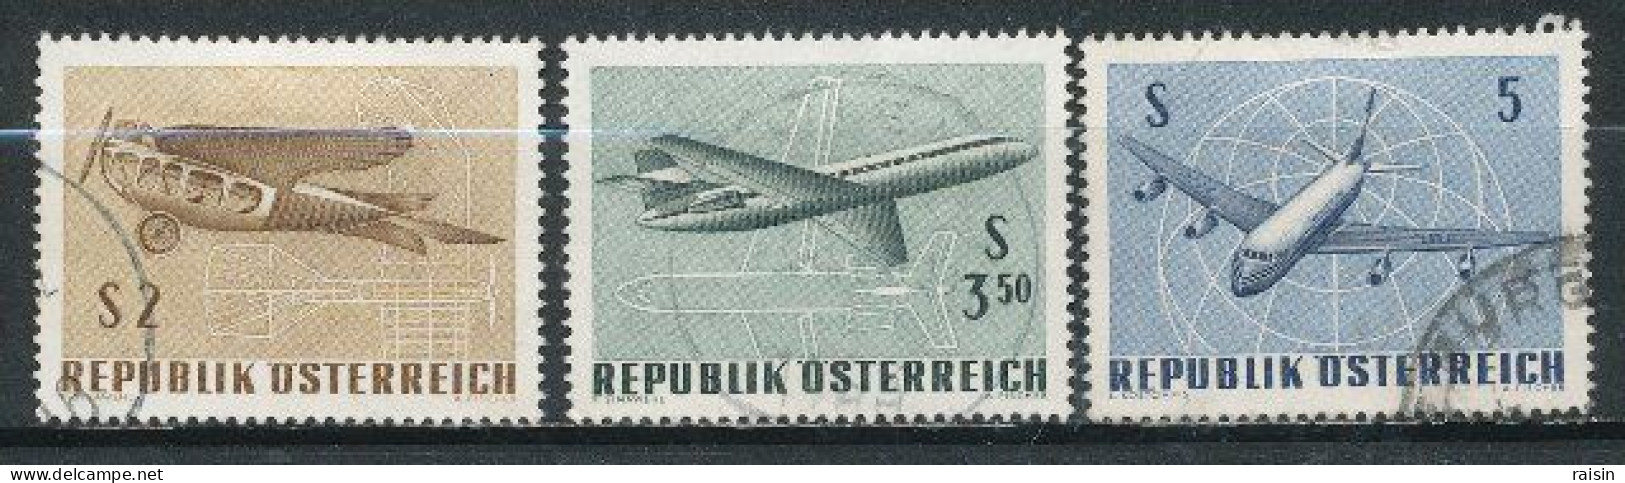 Autriche 1968  Michel 1262-65,  Yvert PA 63-65 - Usati